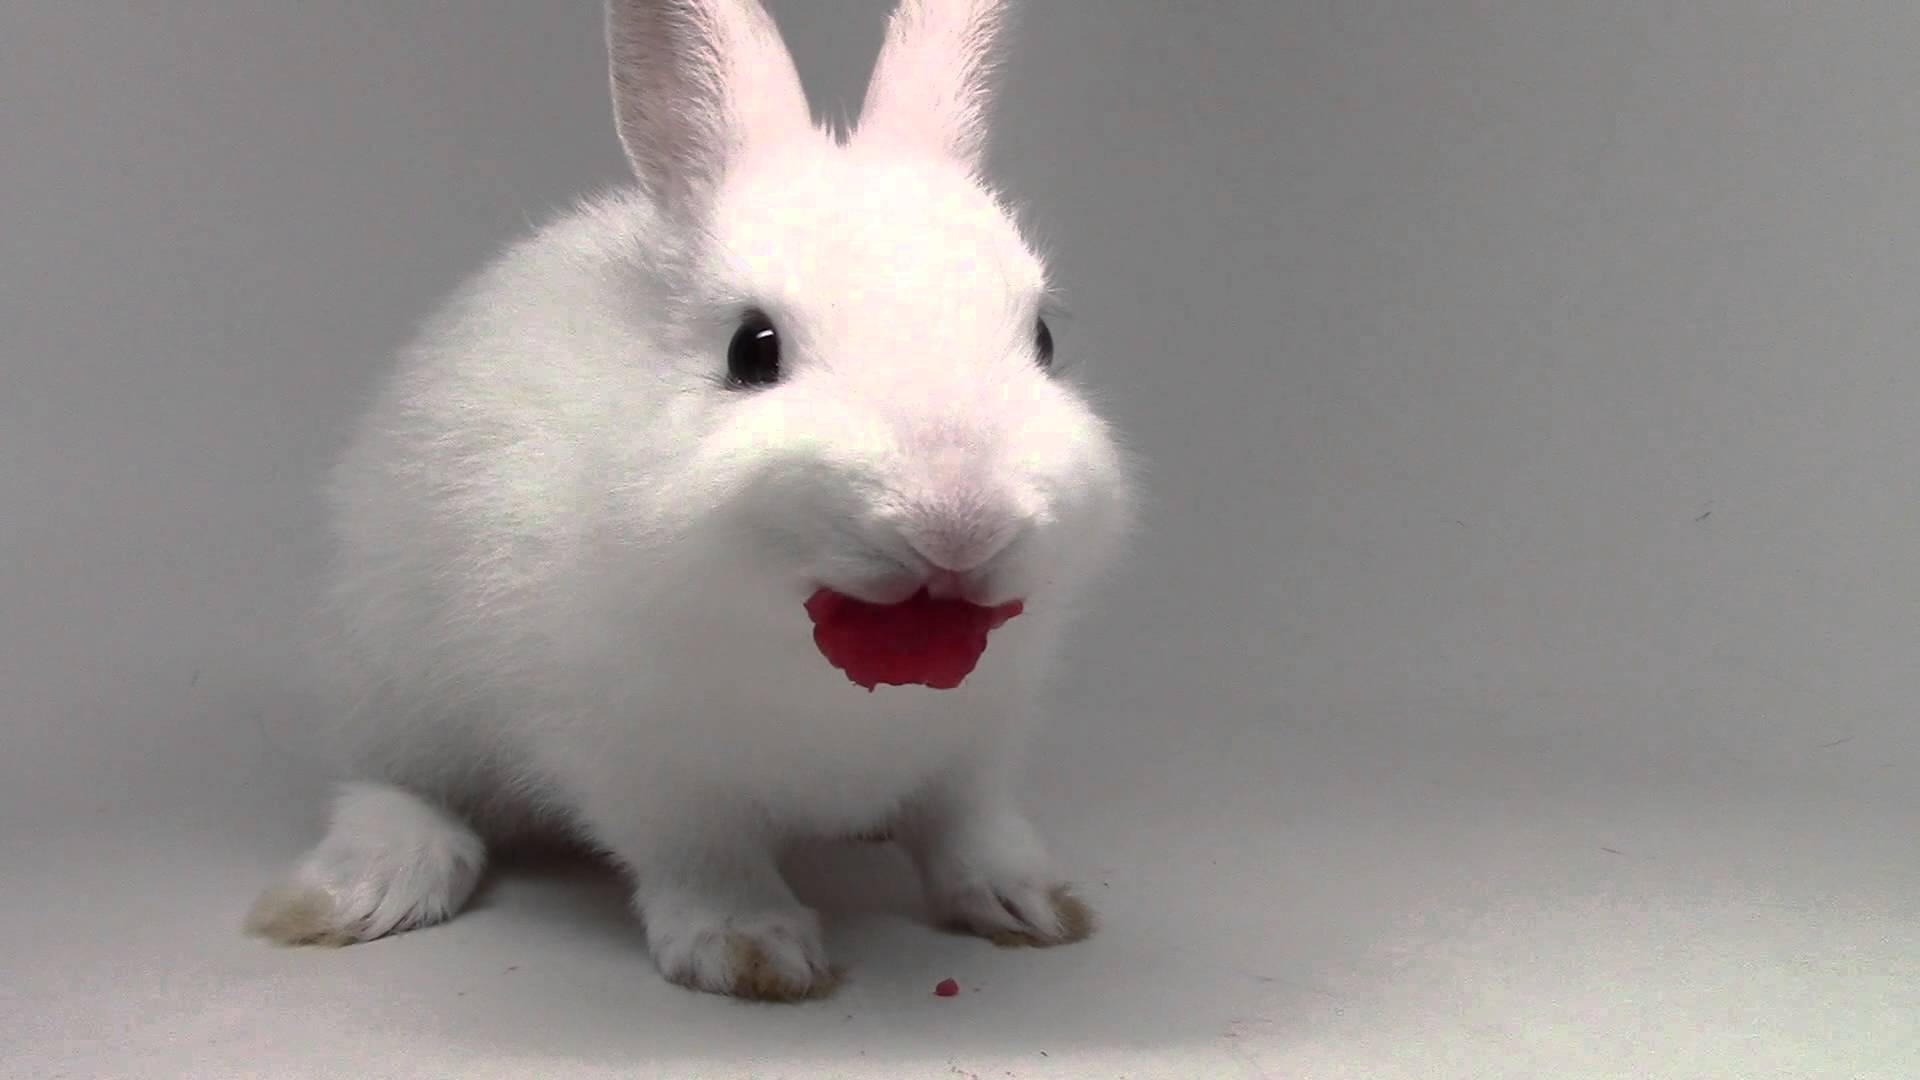 Bunny eating raspberries! - YouTube